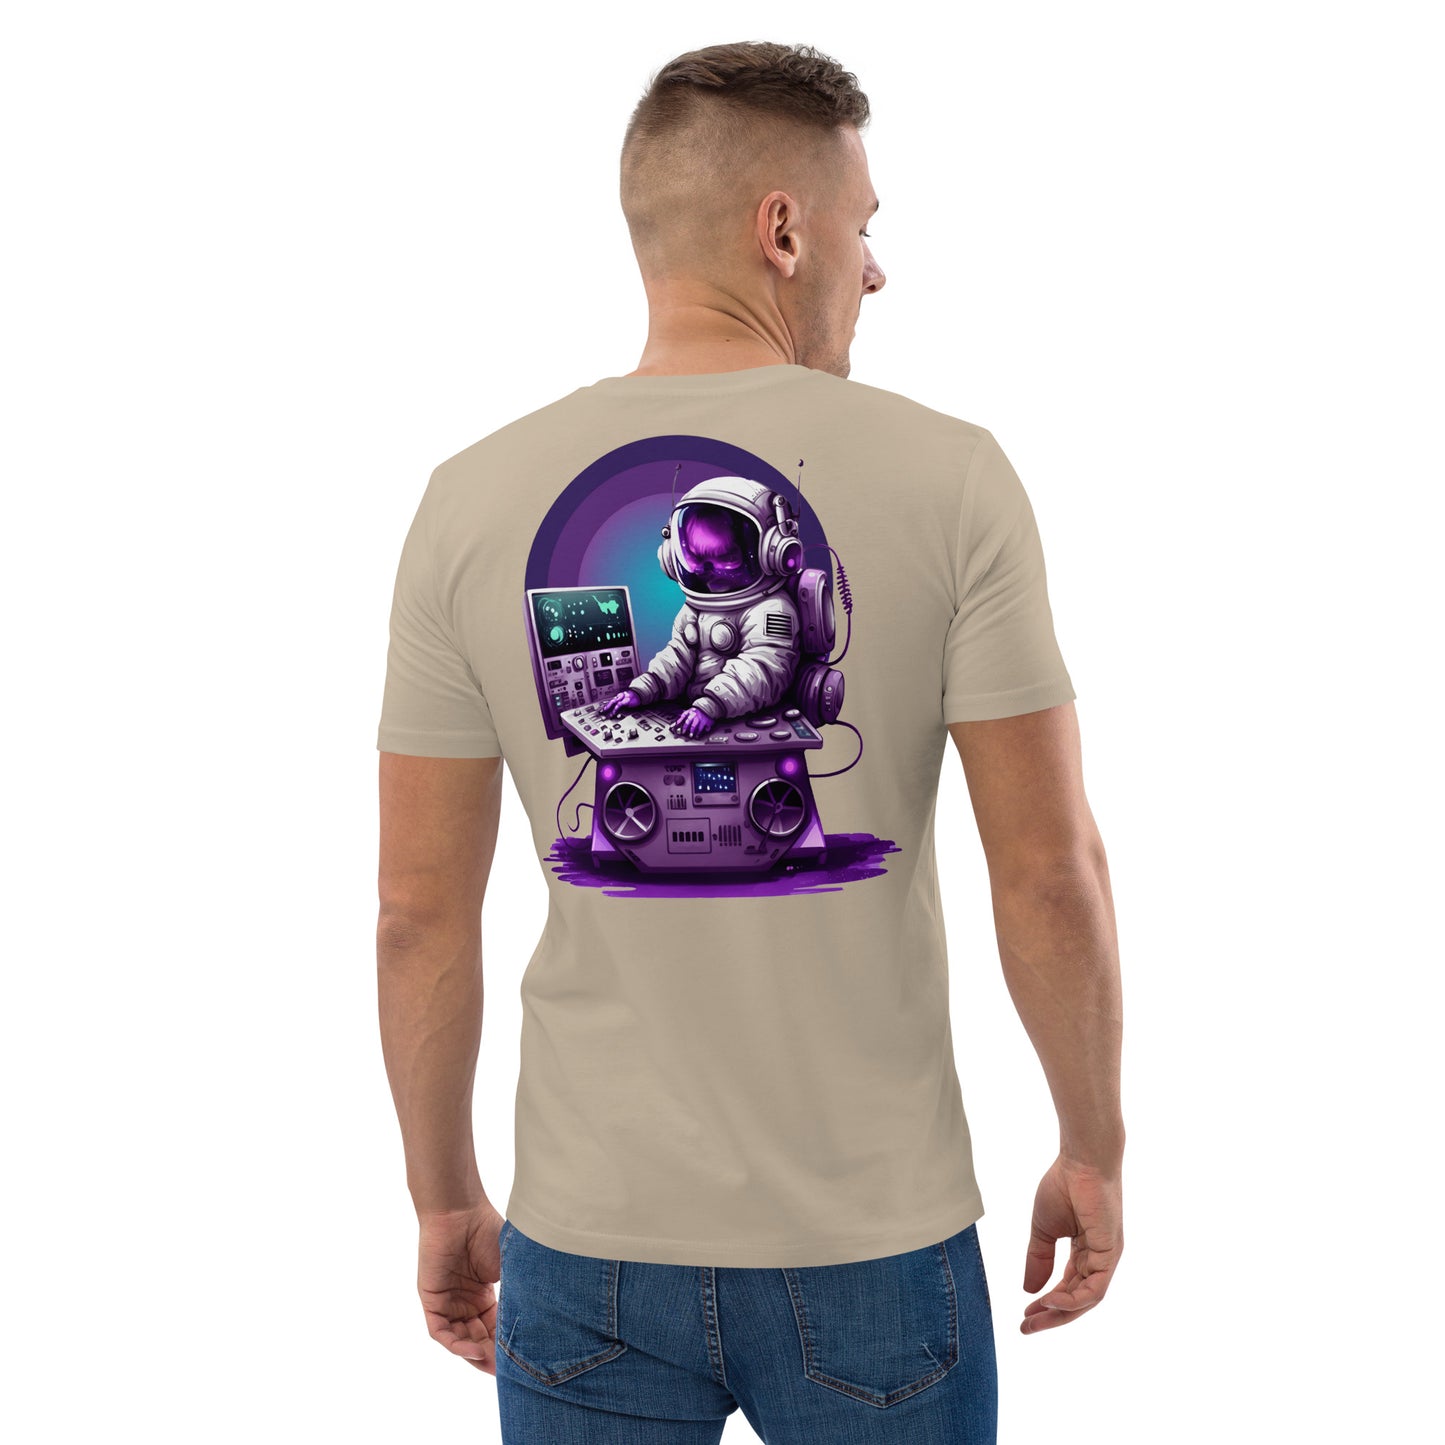 T-Shirt - Space V1.1 - Desert Dust - Premium